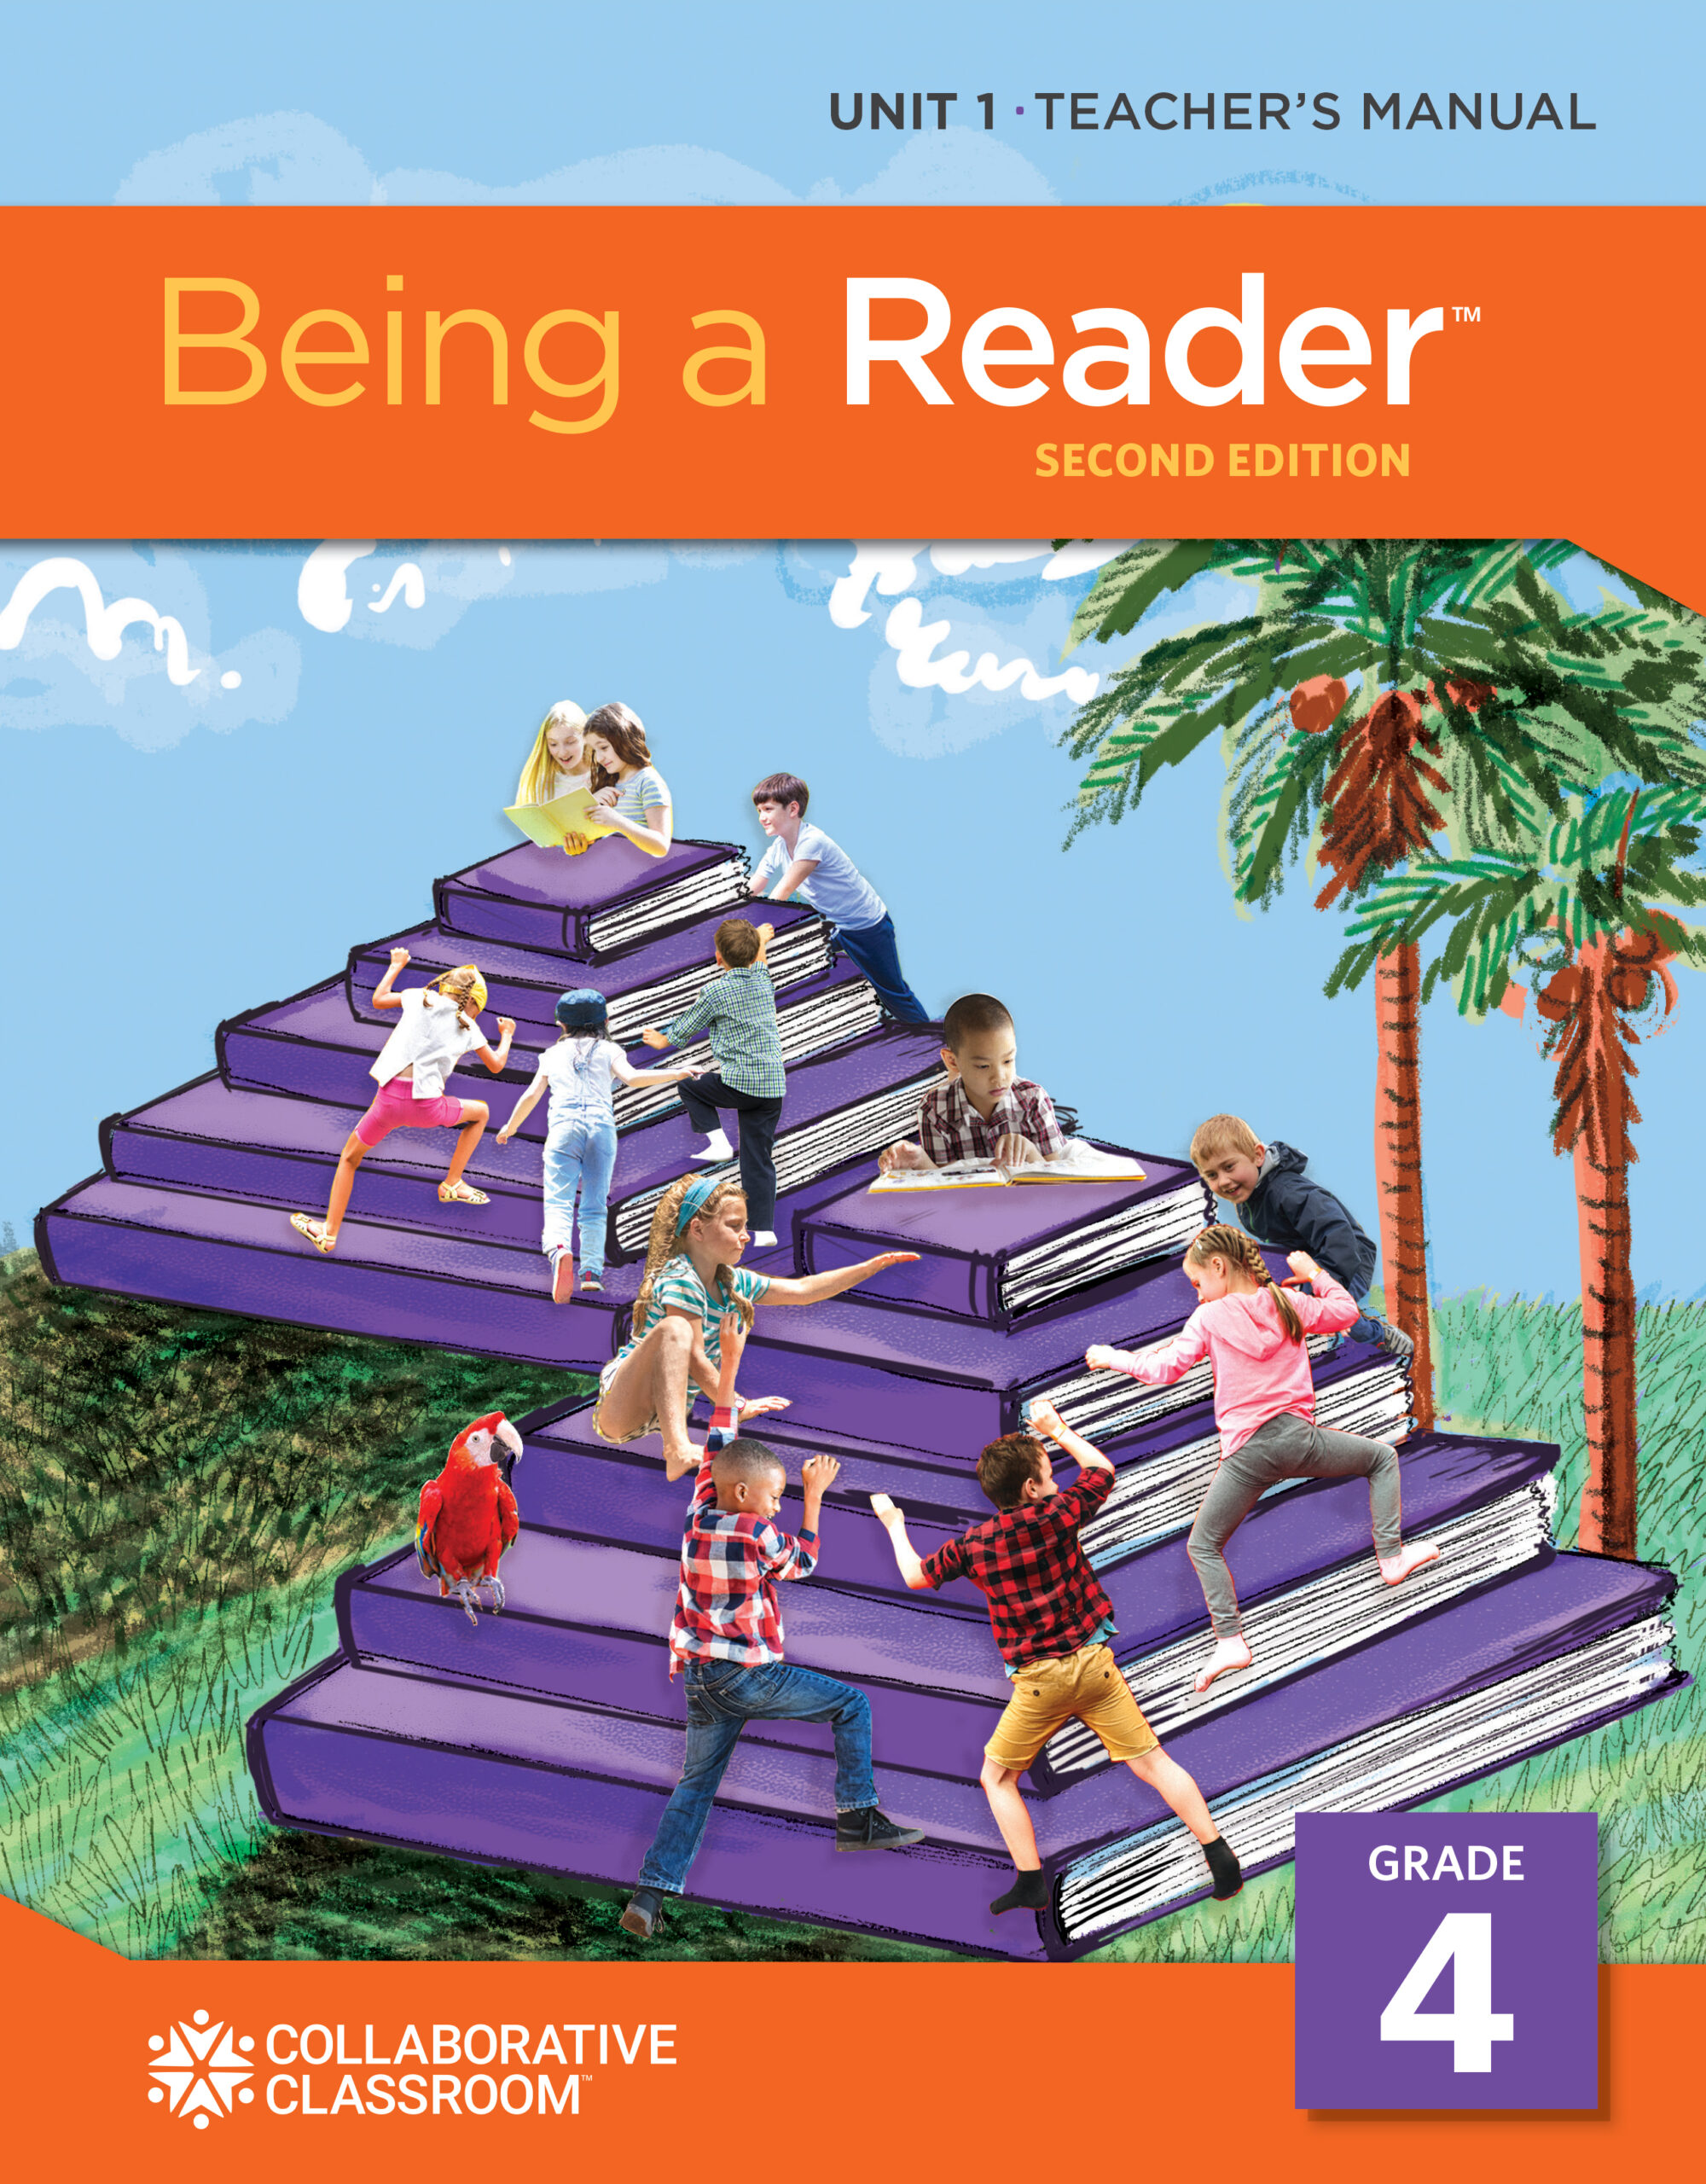 Being a Reader Grade 4 teacher's manual